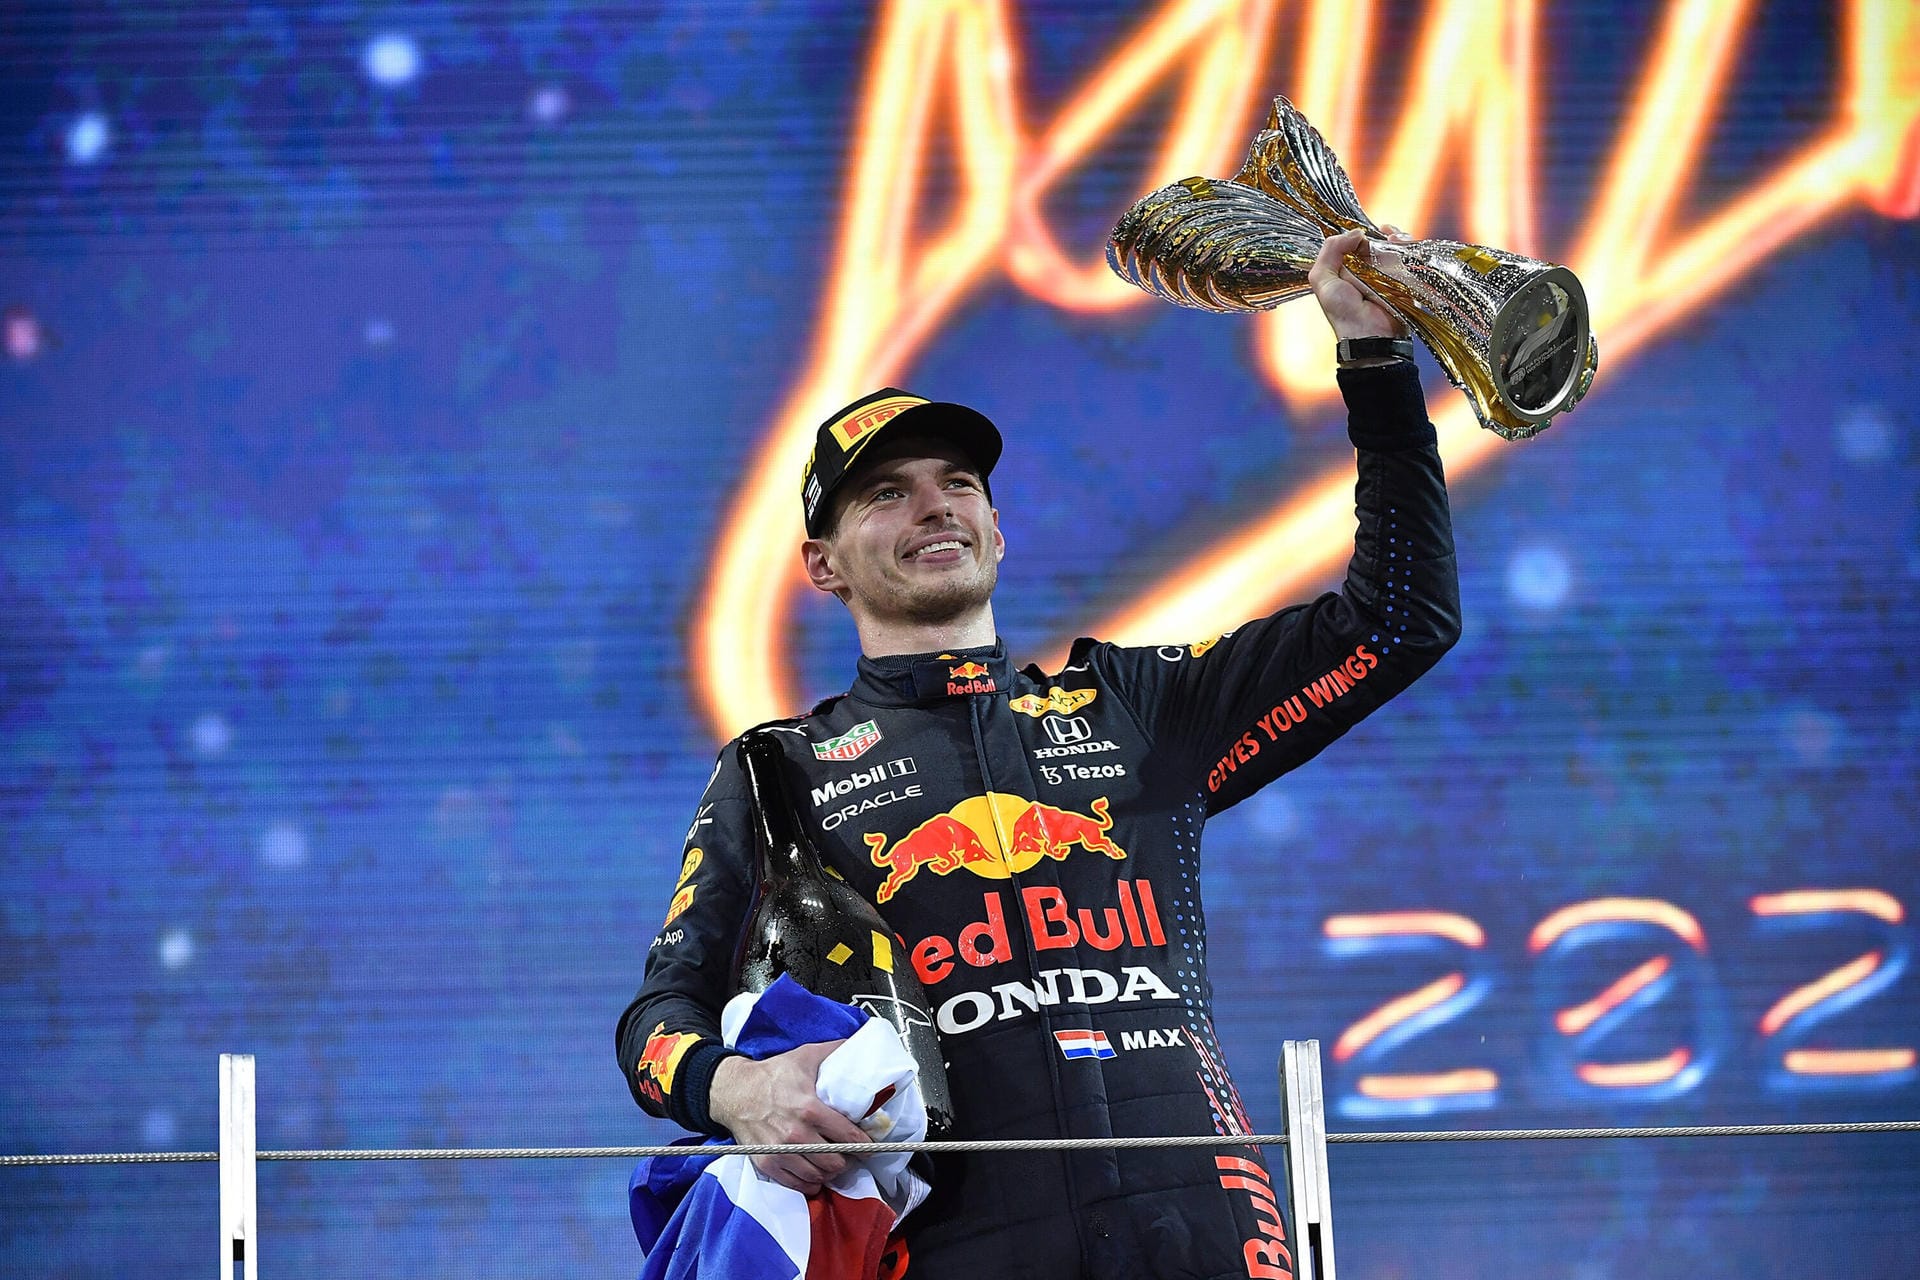 Max Verstappen ist Formel-1-Weltmeister 2021. Der Niederländer setzte sich in einem atemberaubenden Saisonfinale gegen seinen Rivalen Lewis Hamilton durch. Es ist der größte Triumph in der Karriere des 24-Jährigen. t-online blickt zurück auf seine Anfänge.